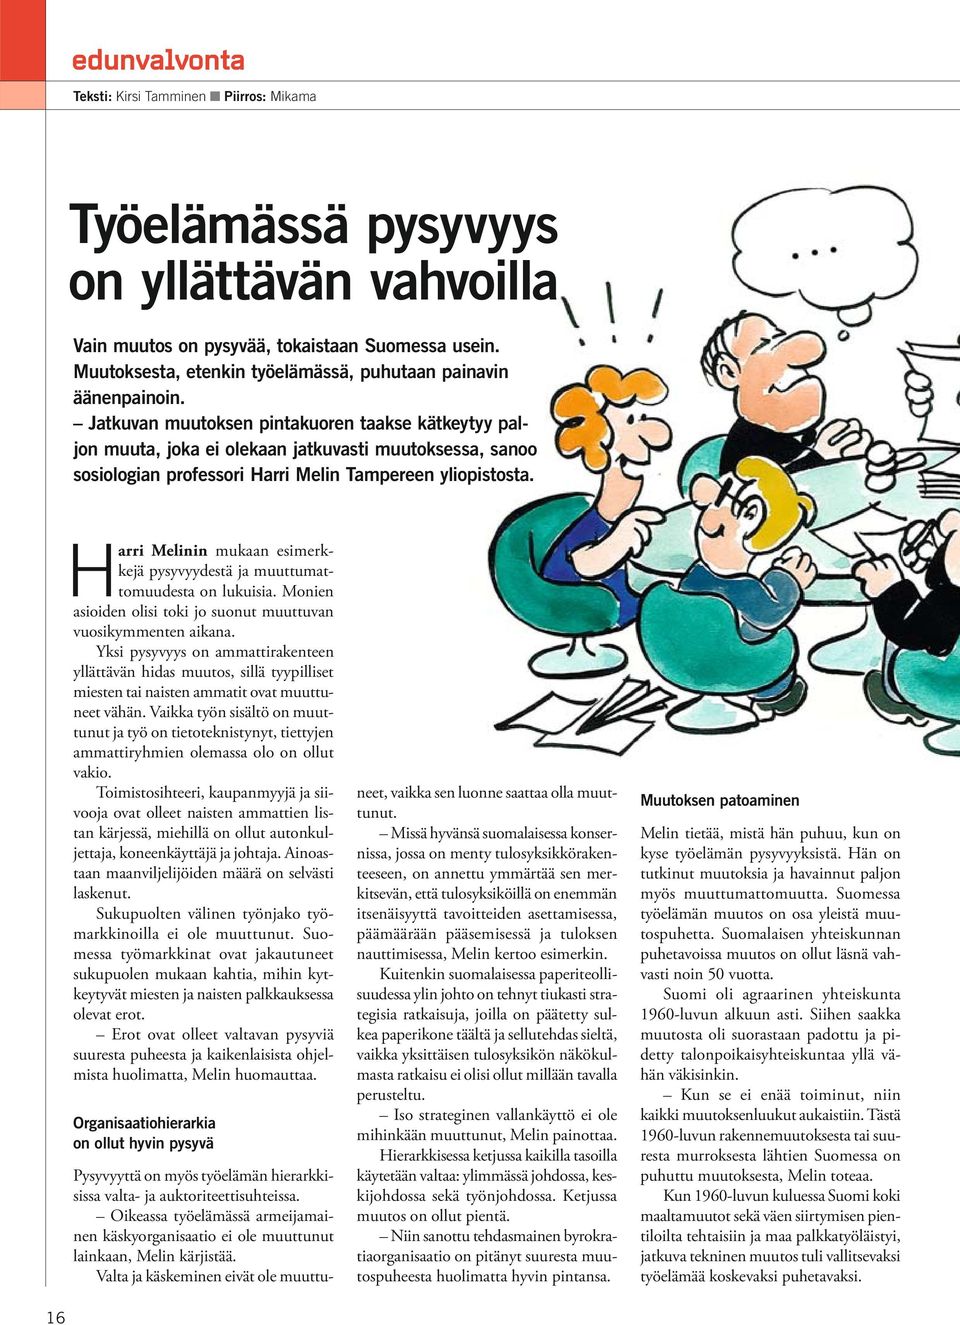 Jatkuvan muutoksen pintakuoren taakse kätkeytyy paljon muuta, joka ei olekaan jatkuvasti muutoksessa, sanoo sosiologian professori Harri Melin Tampereen yliopistosta.